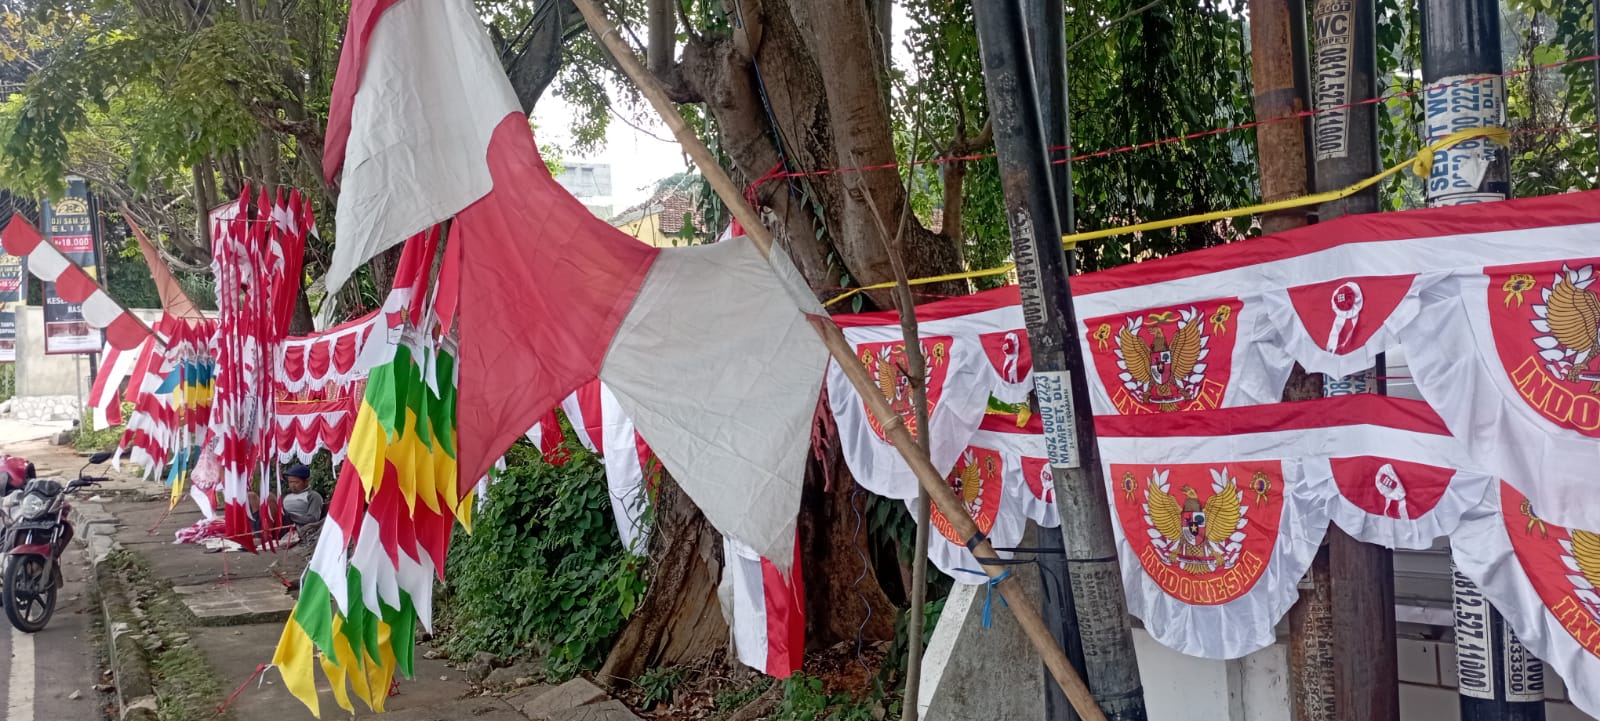 Penjual Bendera Merah Putih Menjamur, Omset Naik 25 Persen